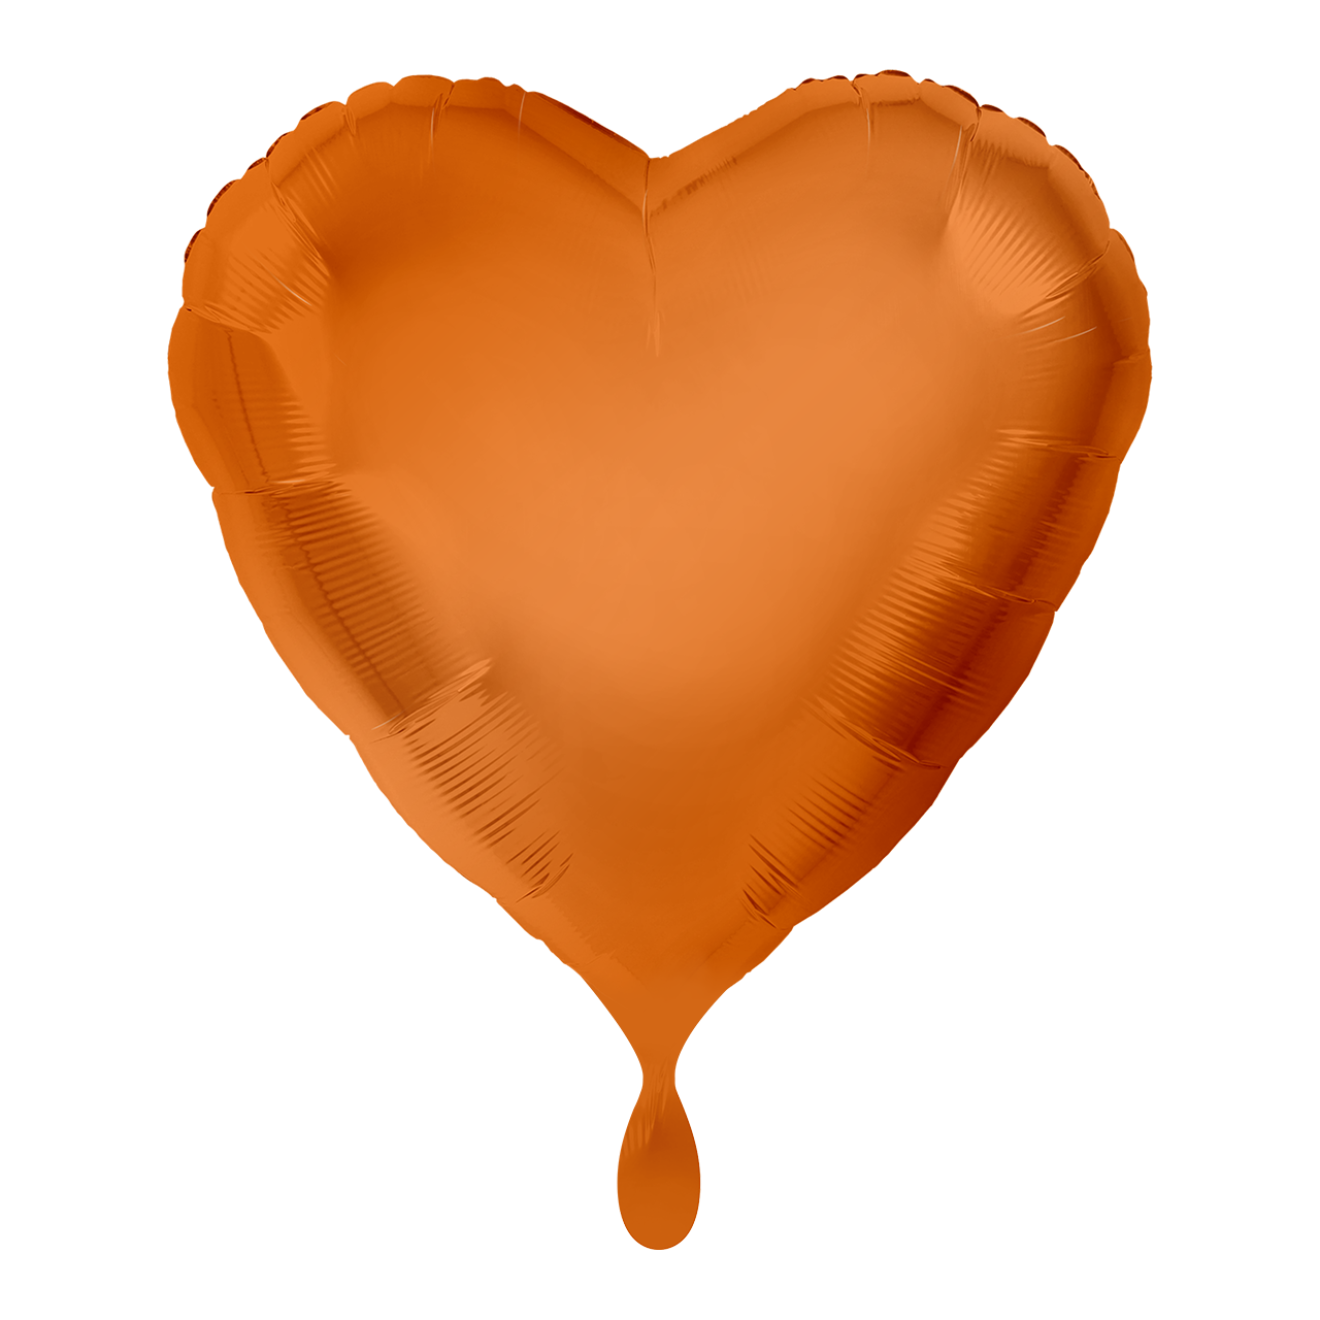 1 Balloon - Herz - Orange